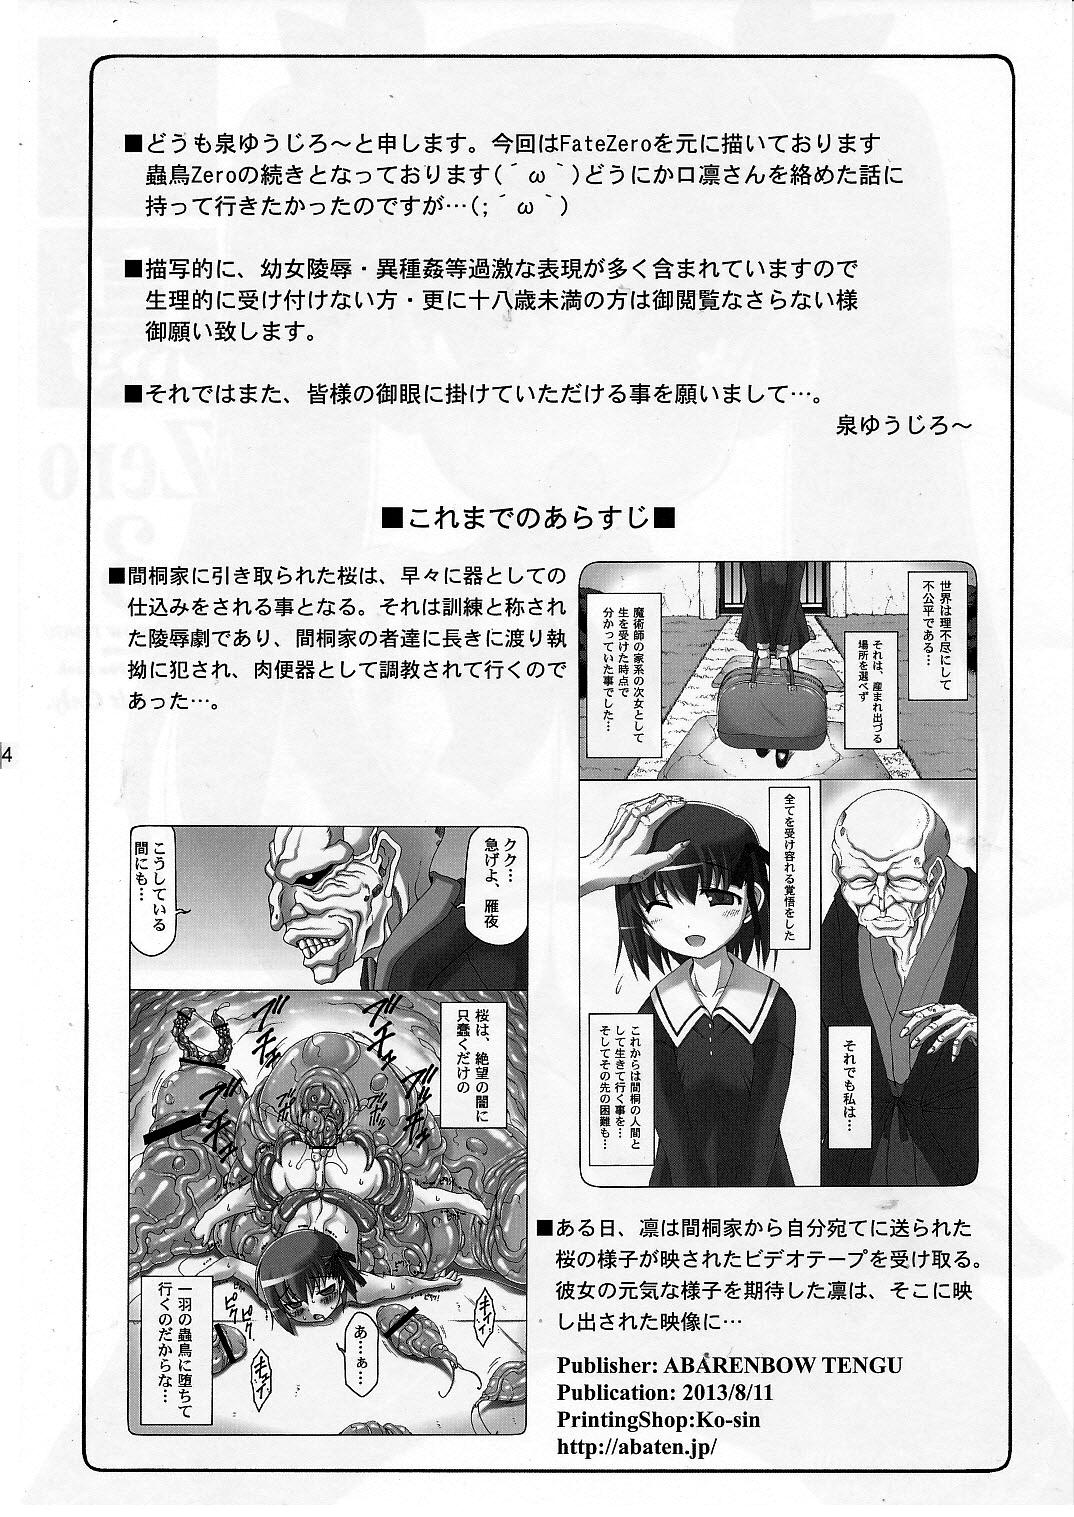 Les Kotori Zero 3 - Fate zero Gaybukkake - Page 3